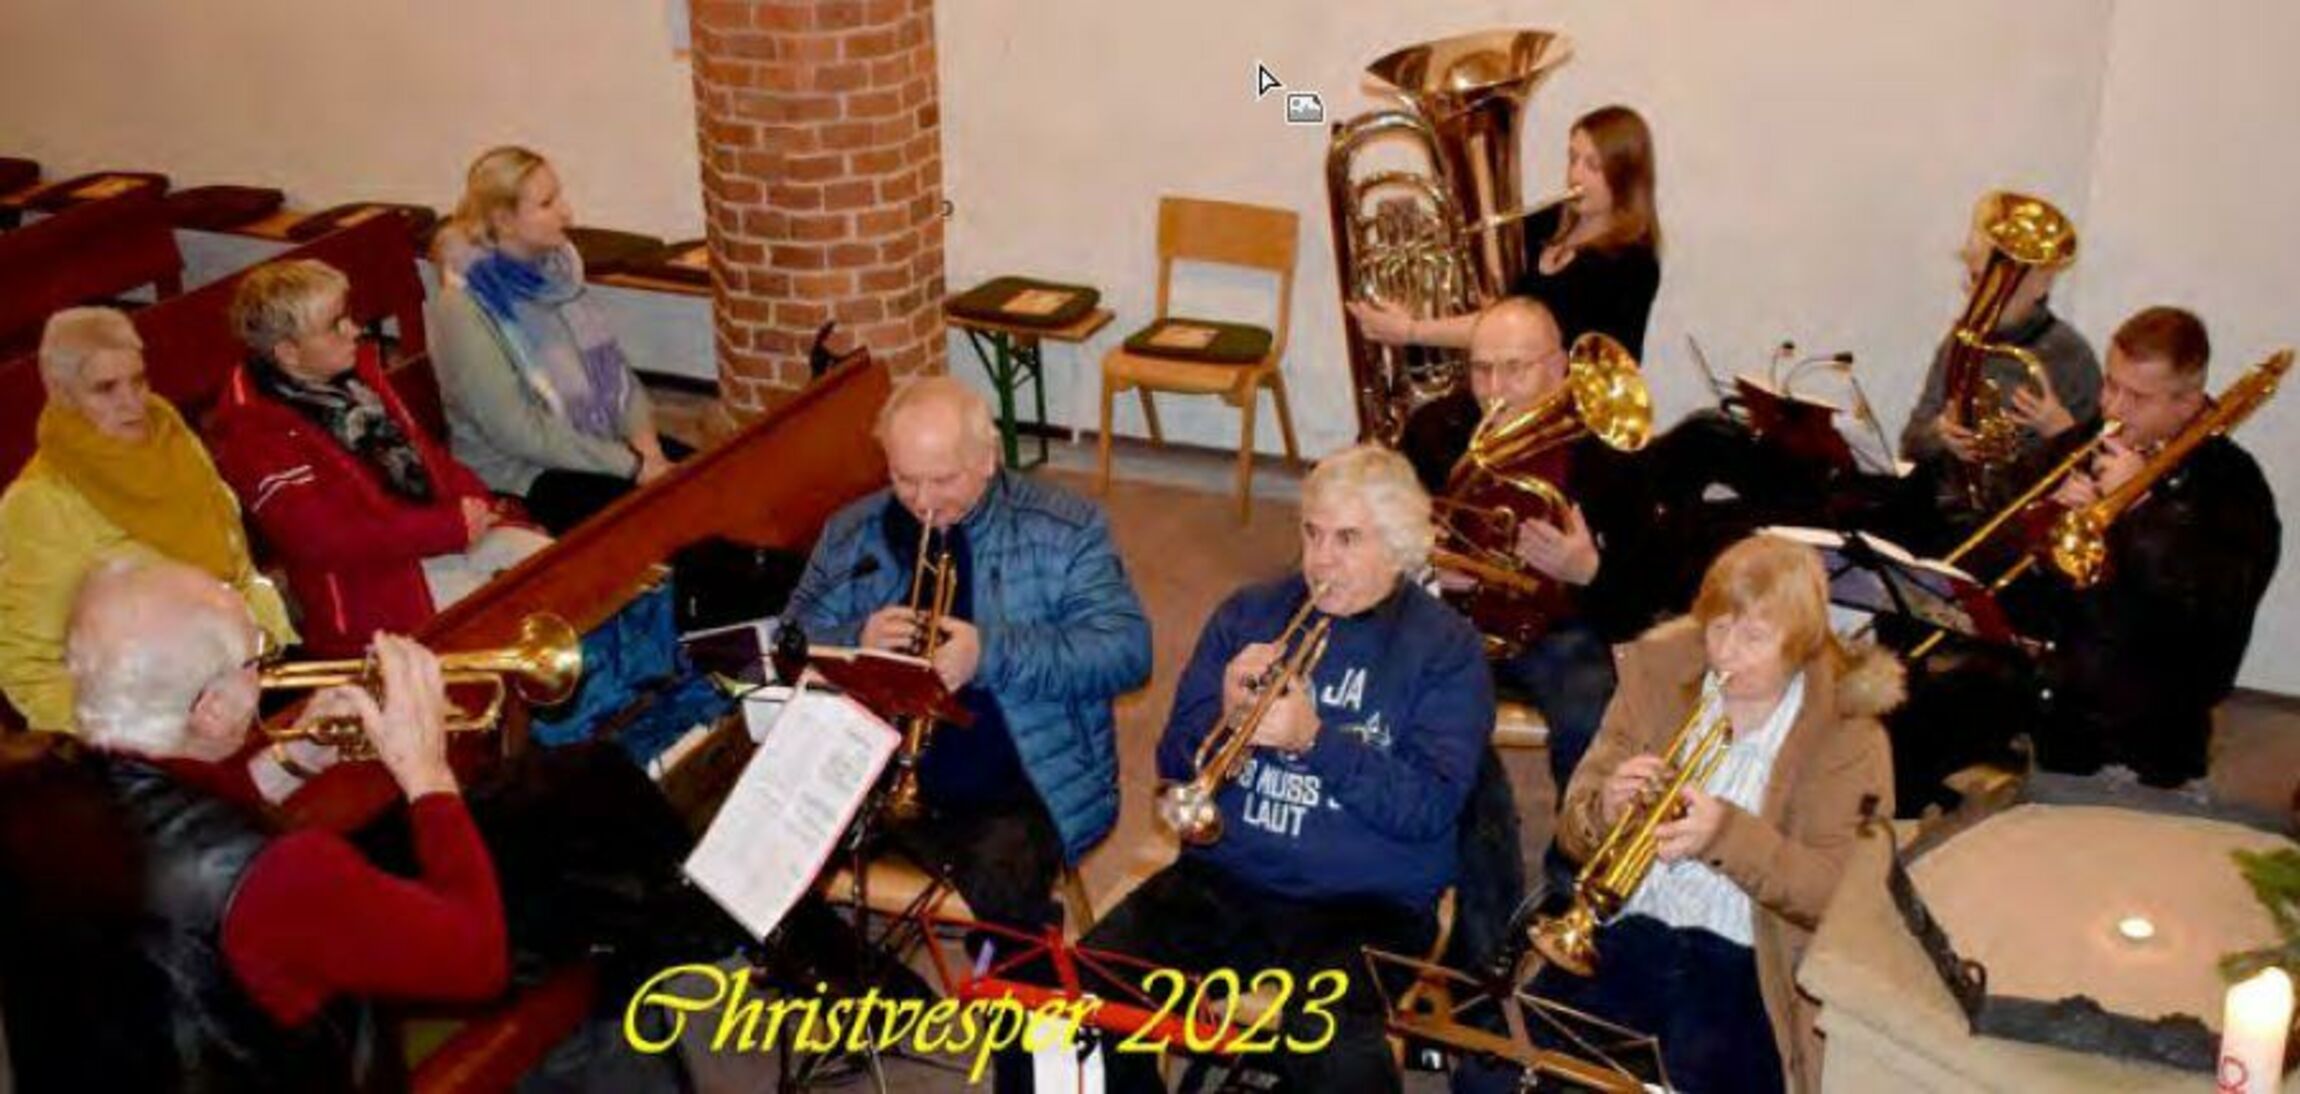 Christvesper 2023